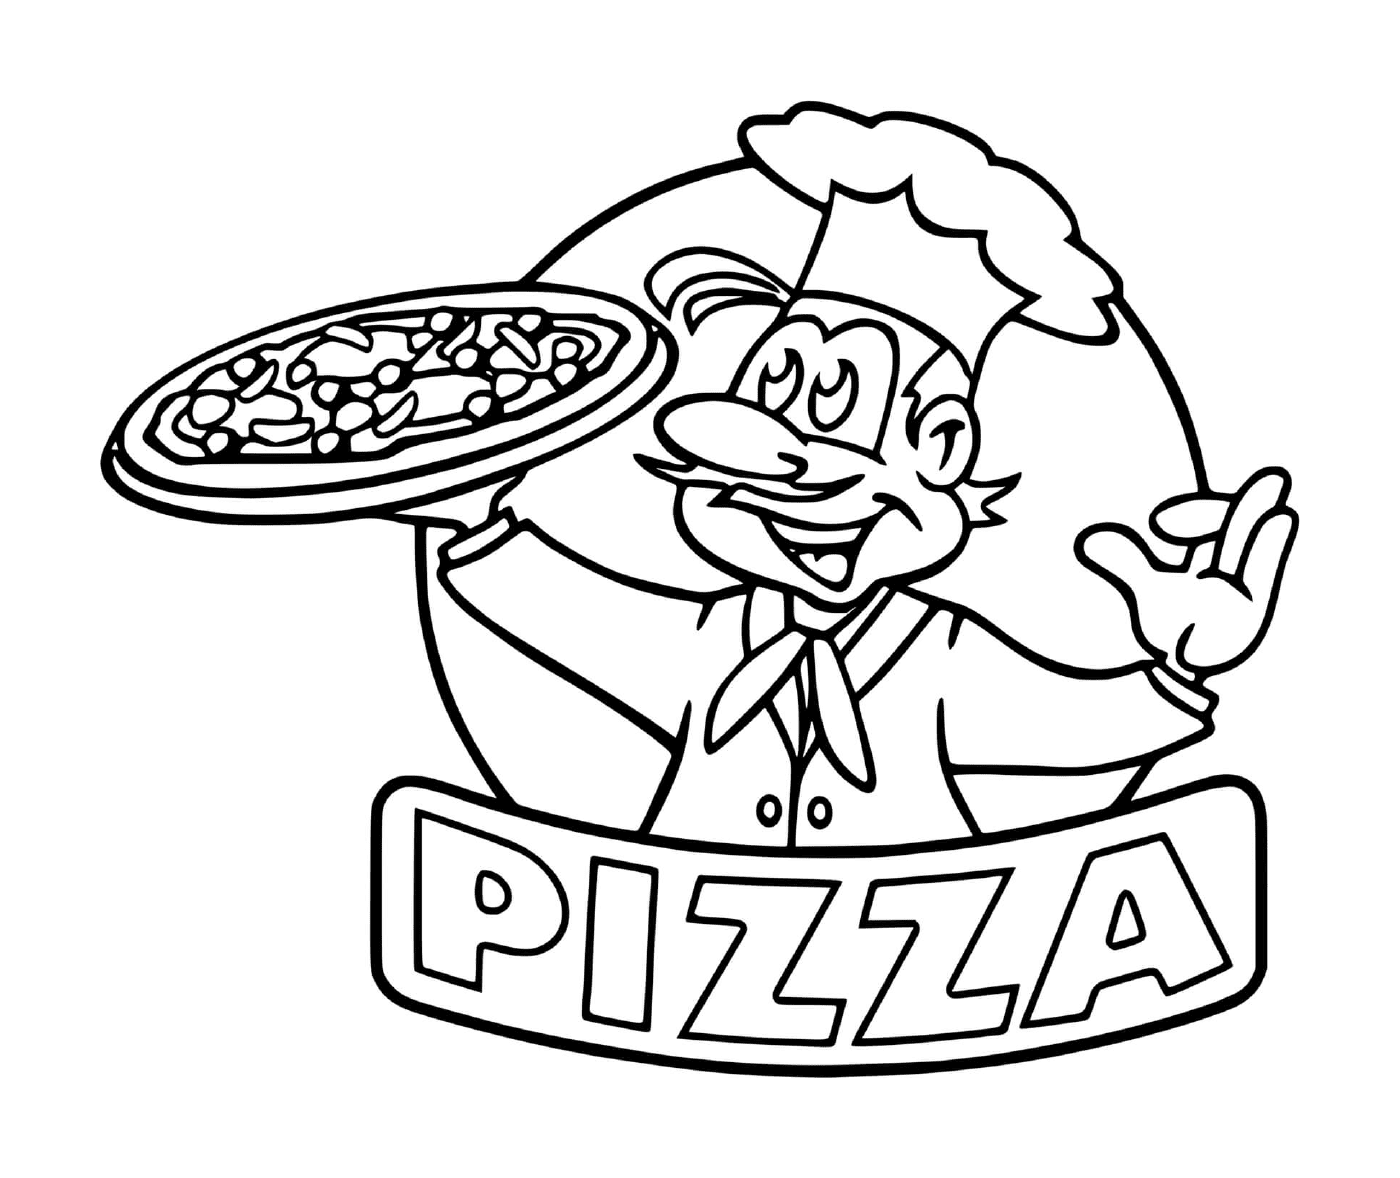  Логотип шеф-повара пиццы 